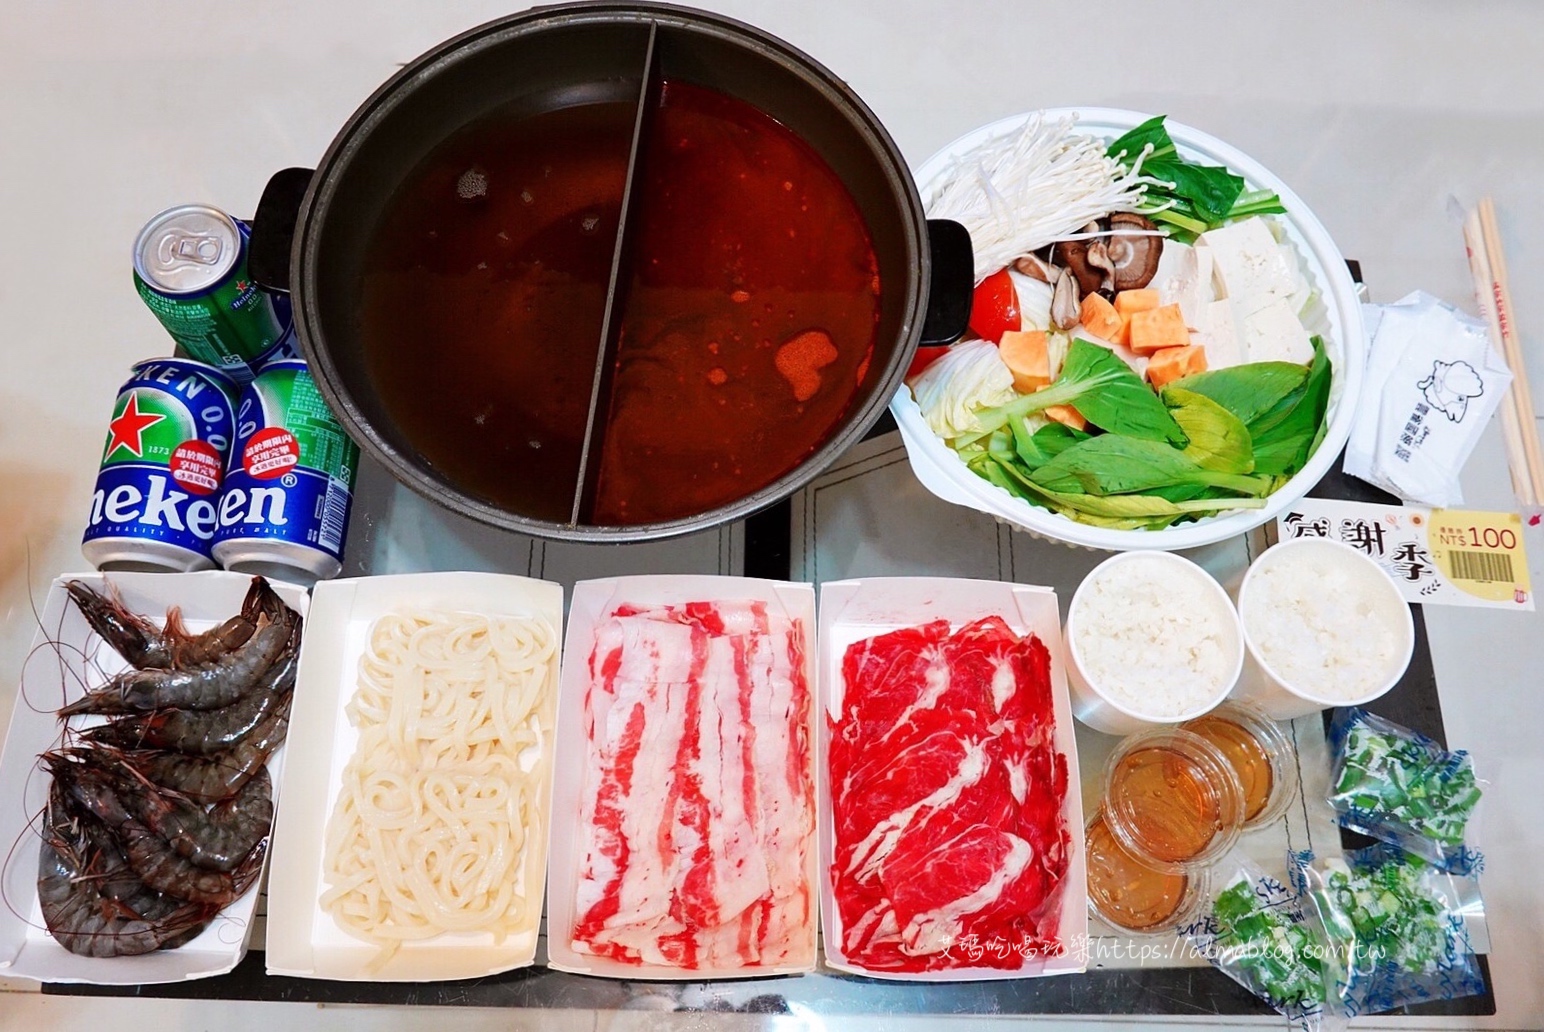 涮乃葉 syabu-yo 日式涮涮鍋吃到飽,火鍋,防疫餐